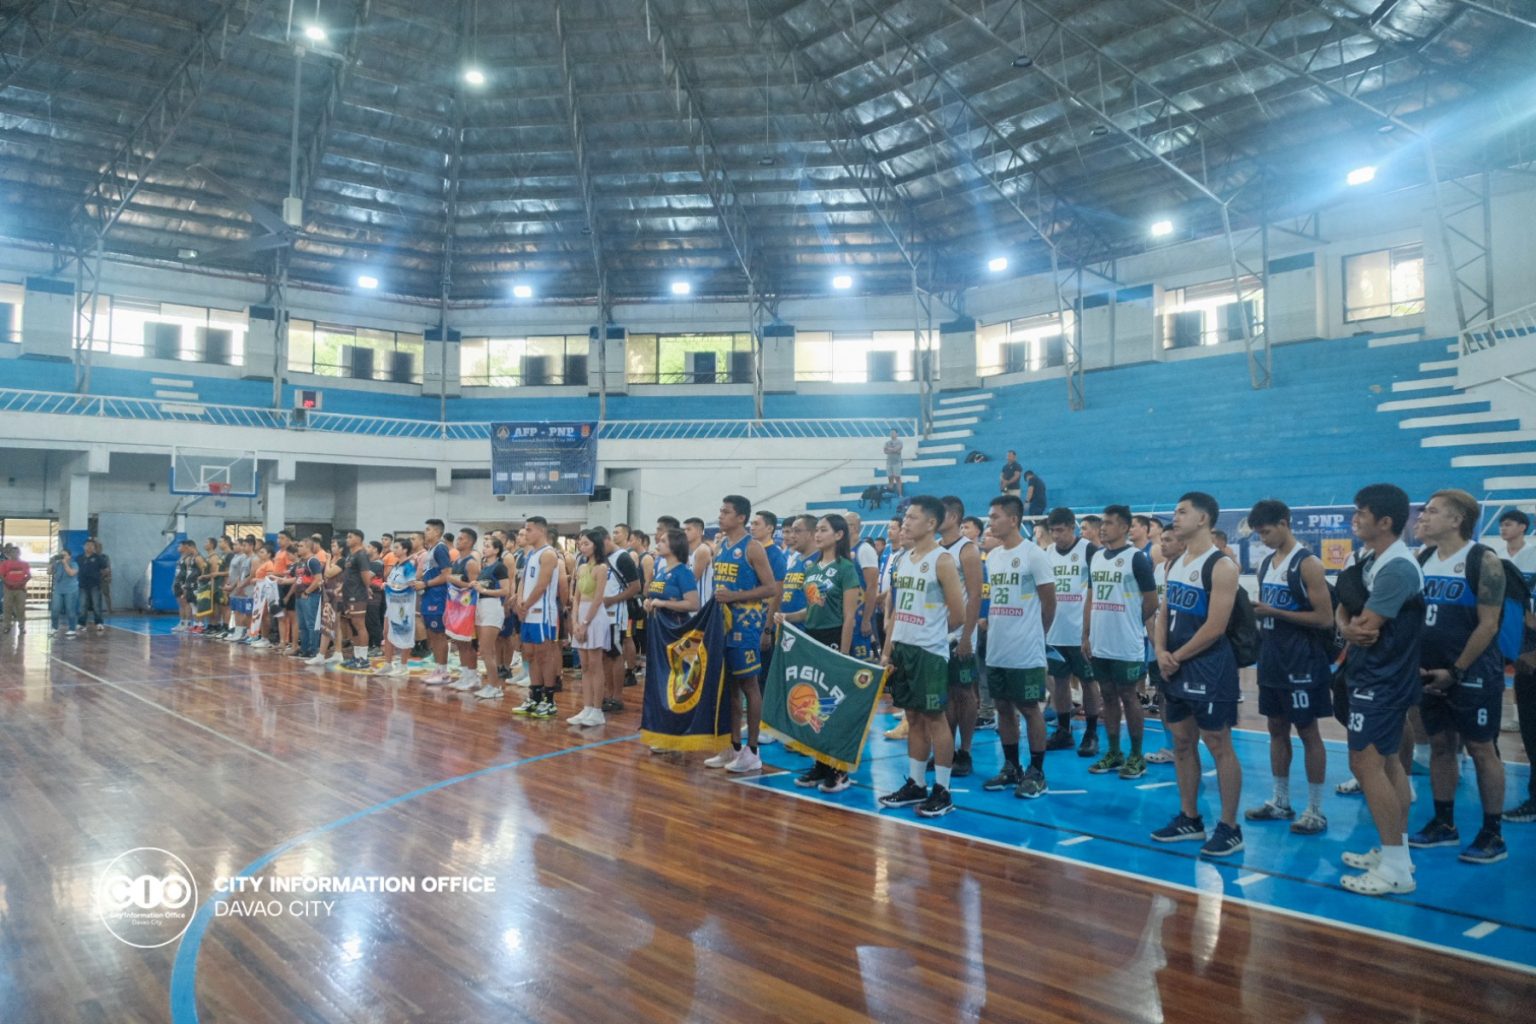 AFP-PNP basketball tilt opens